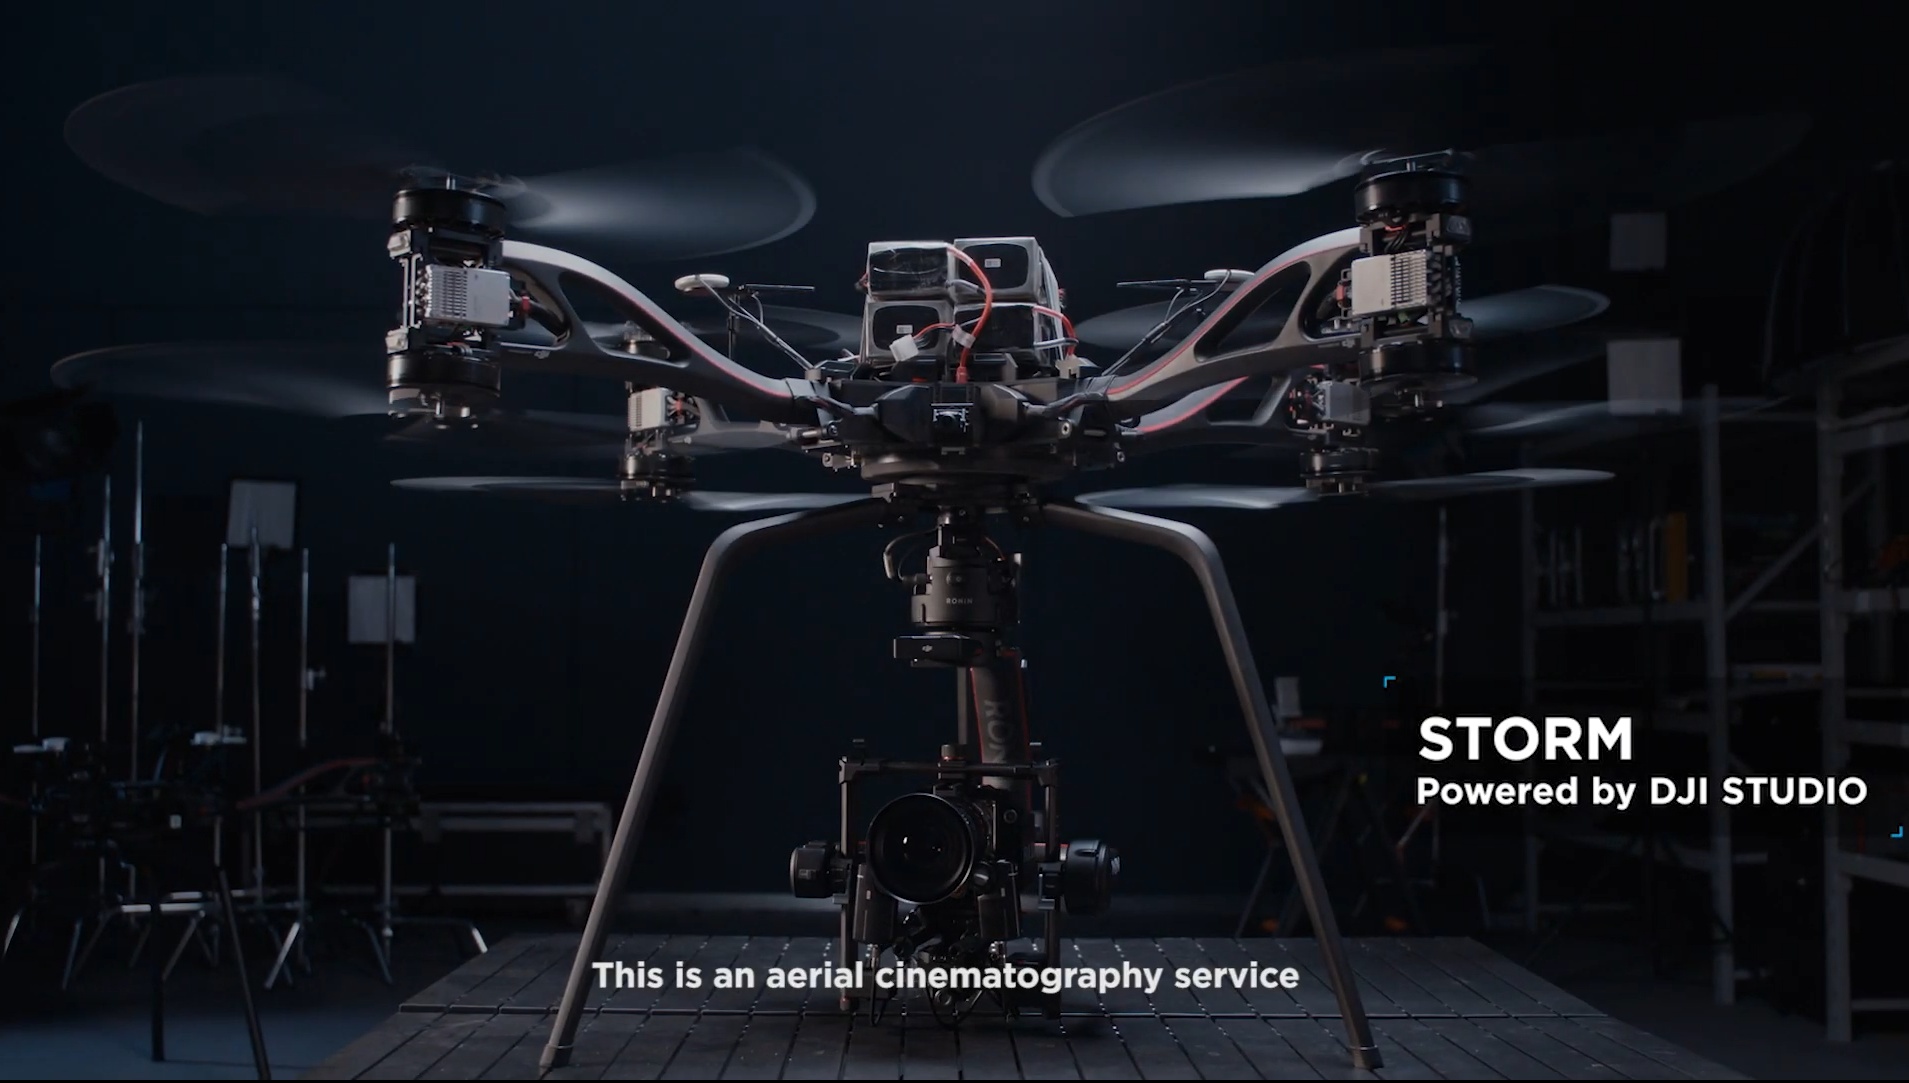 DJI Studio lặng lẽ ra mắt chính thức drone STORM mới dành cho quay phim chuyên nghiệp